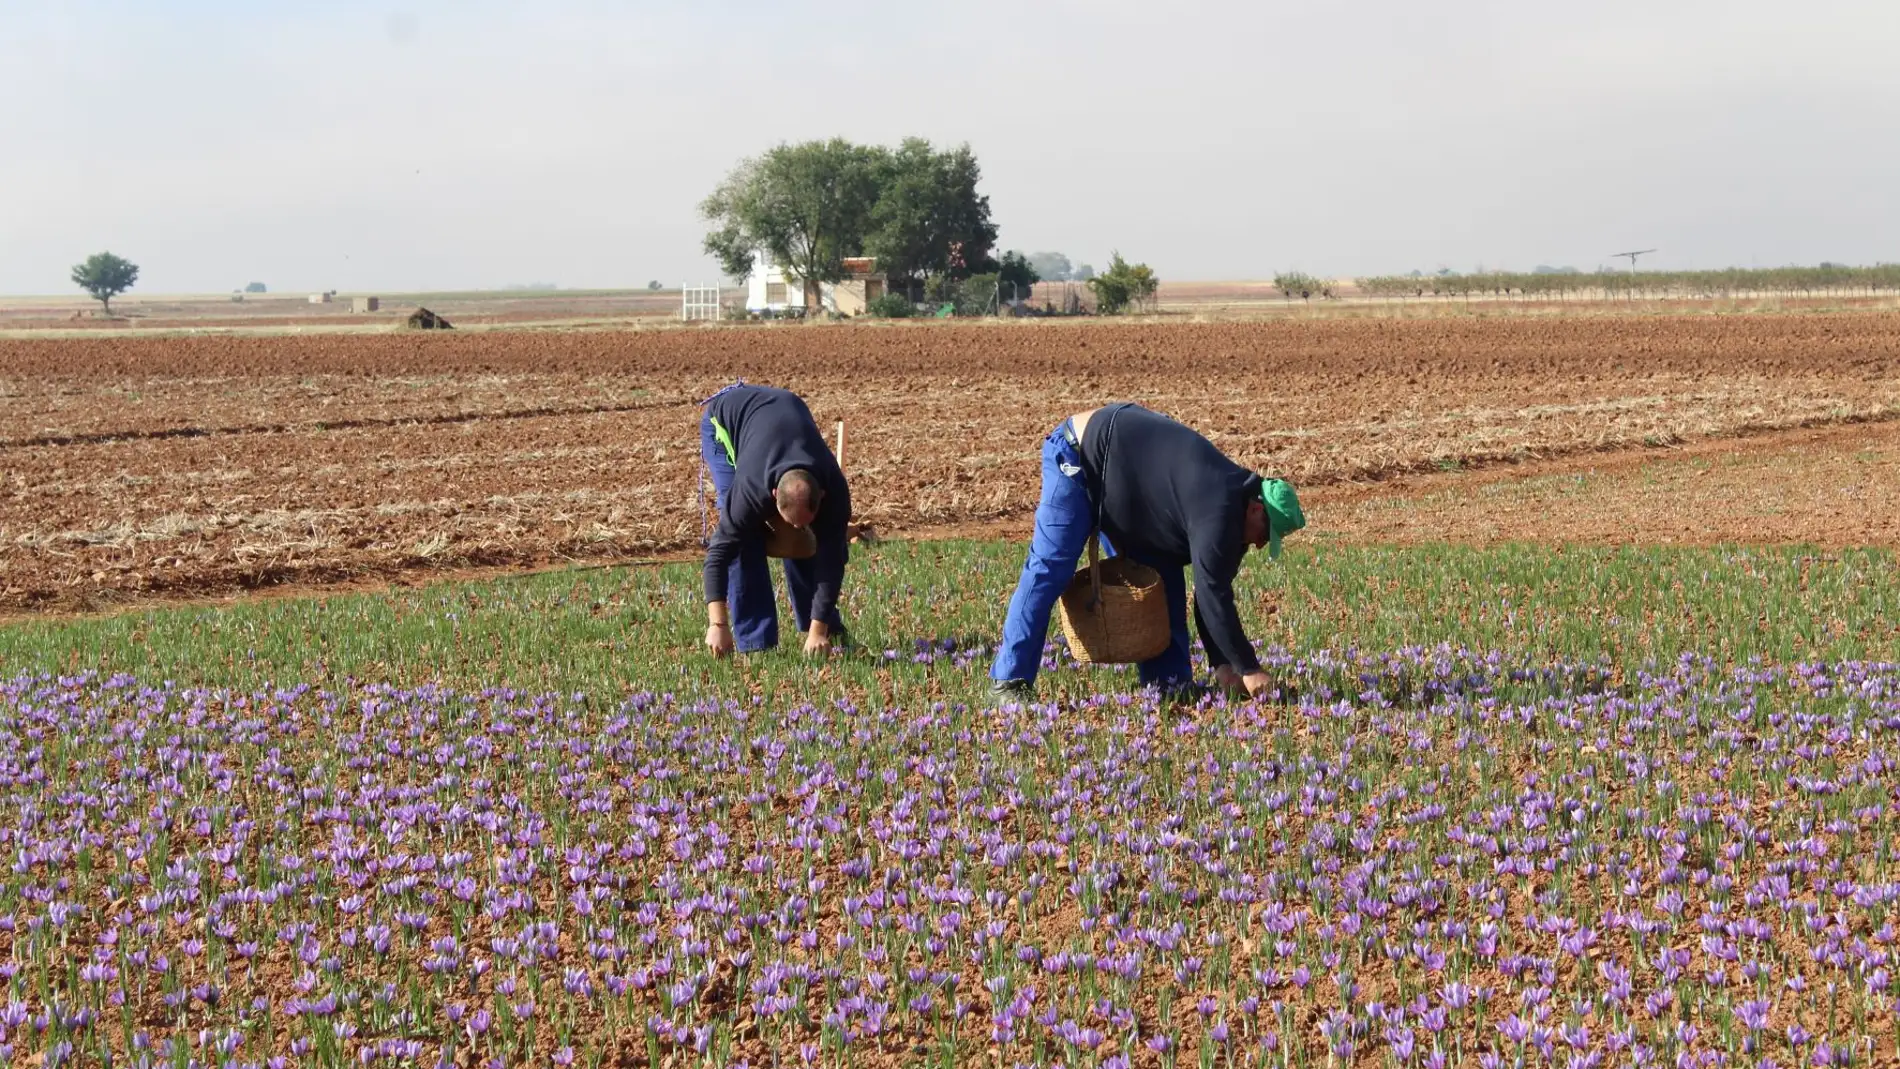 La DOP Azafrán de La Mancha cierra la campaña con una cosecha de 346,86 kilogramos